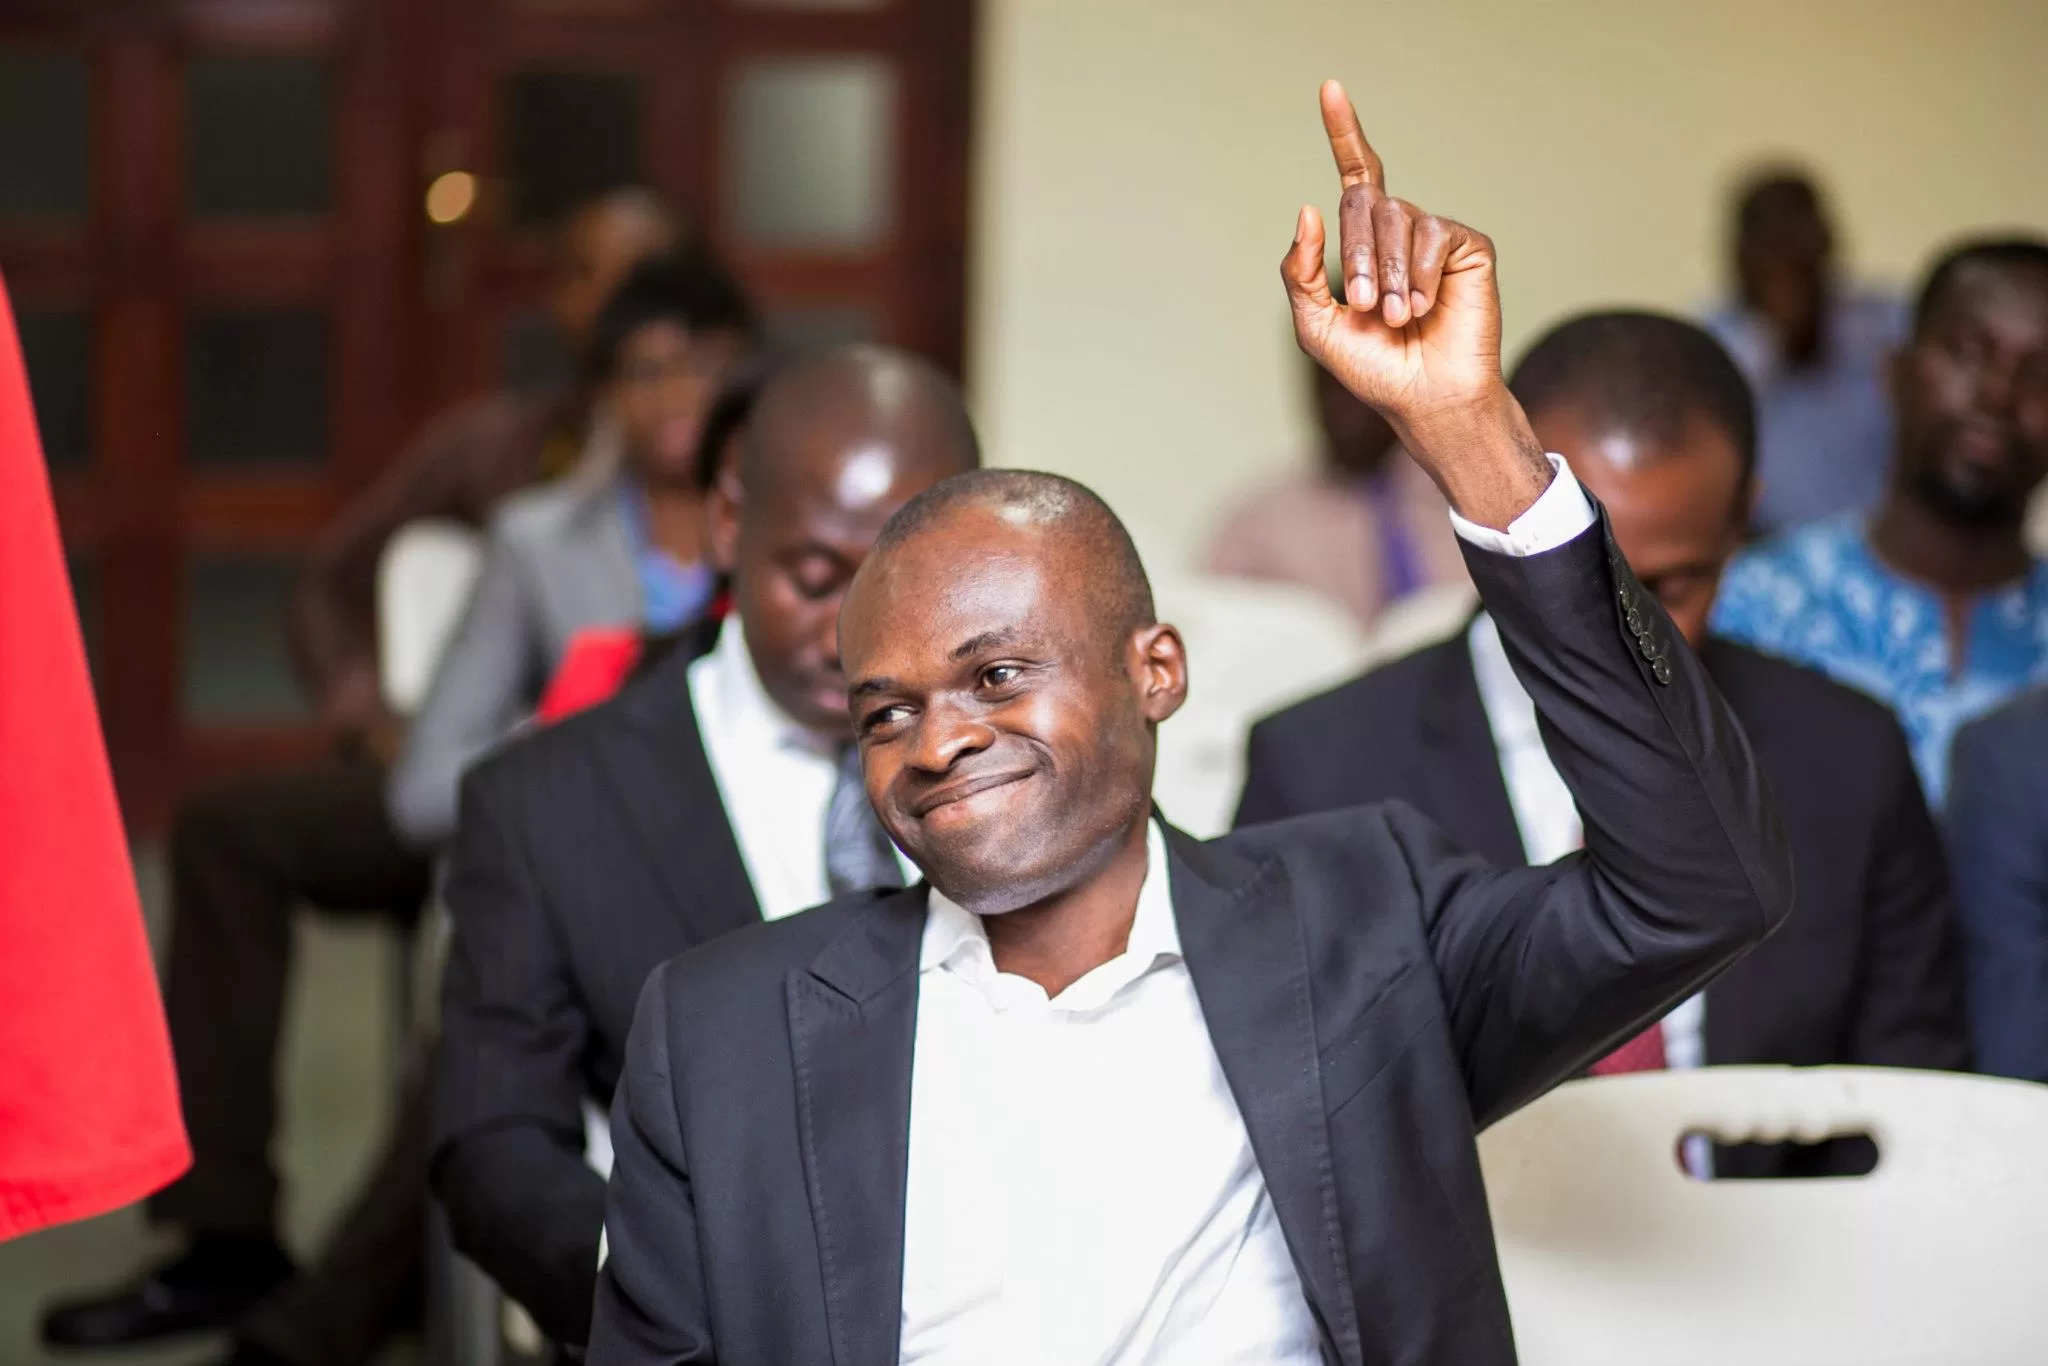 Kpebu believes the NDC should have postponed the primaries to satisfy Duffuor's concerns